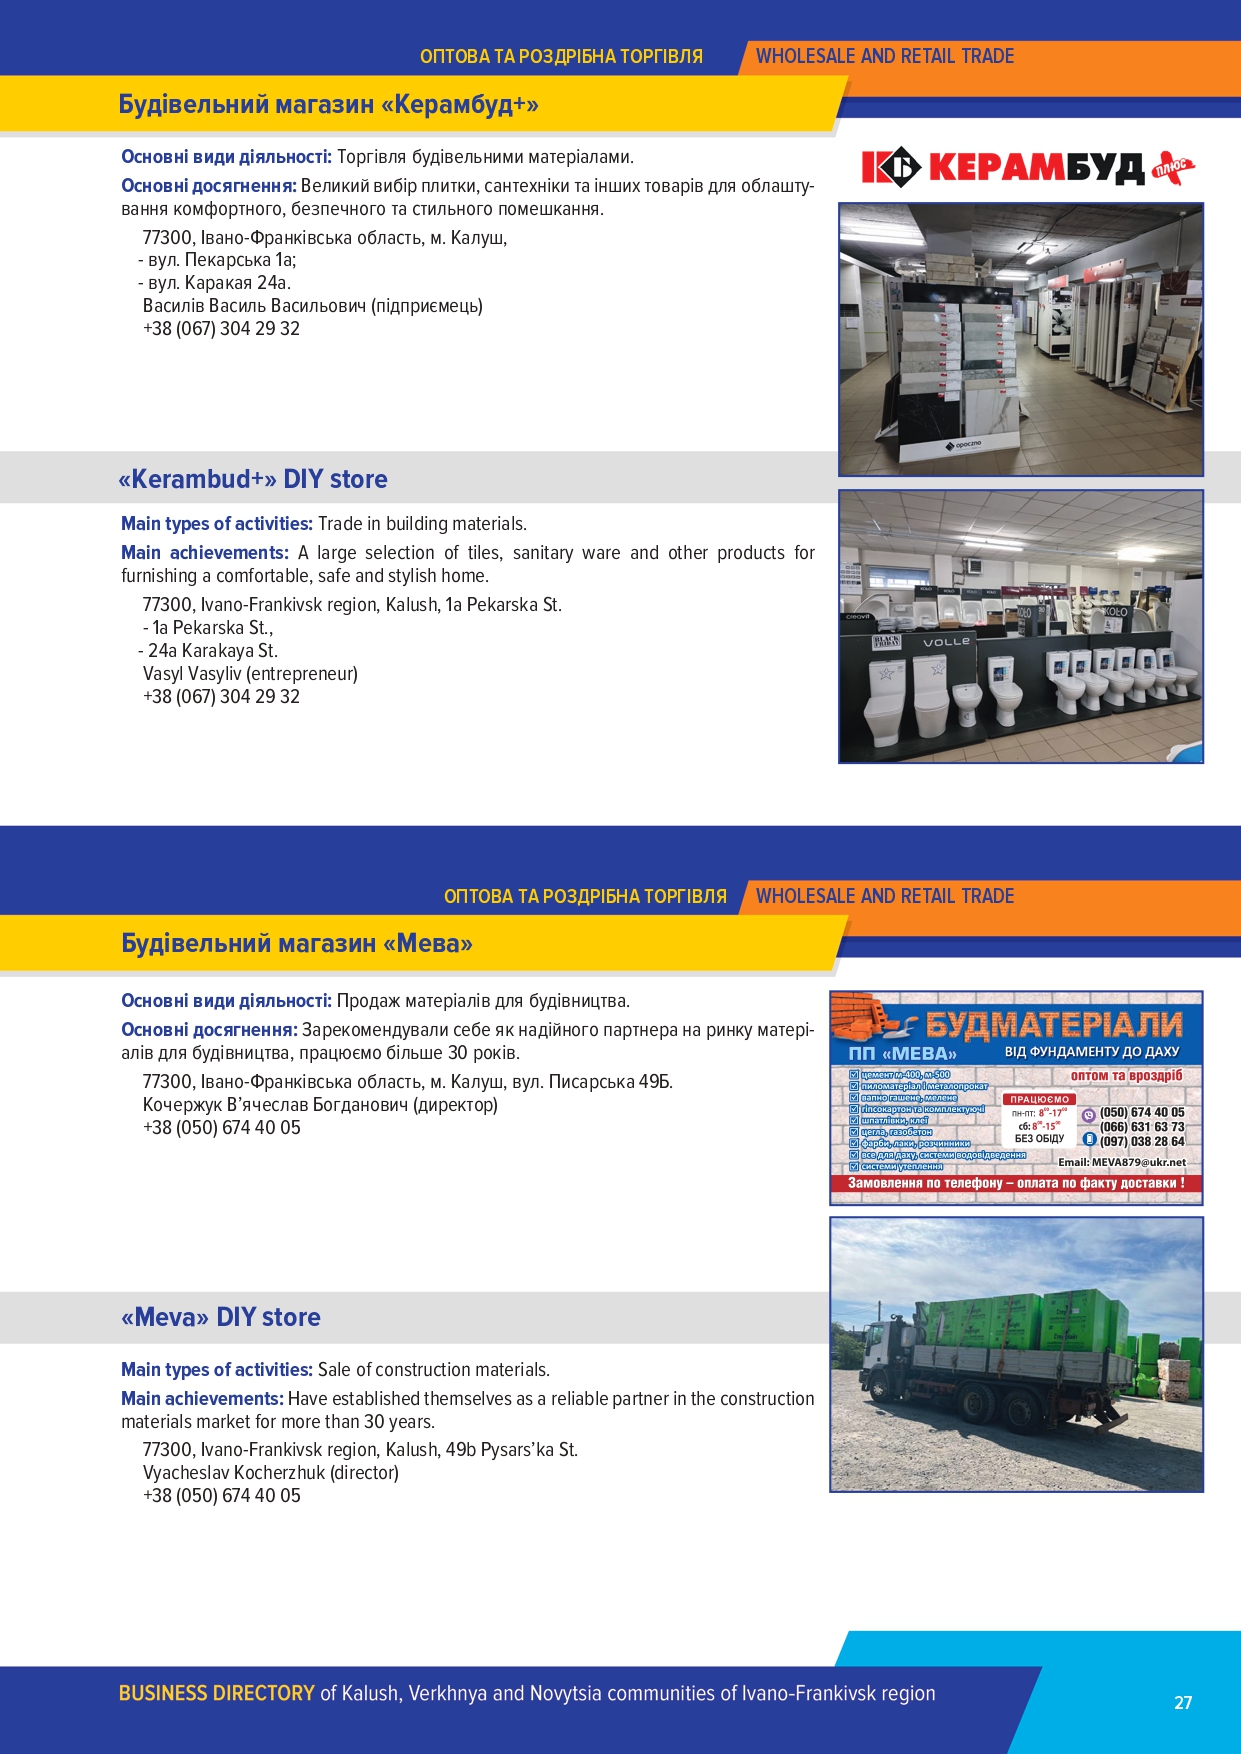 Бізнес каталог УФРА зі змінами  (1)_page-0027